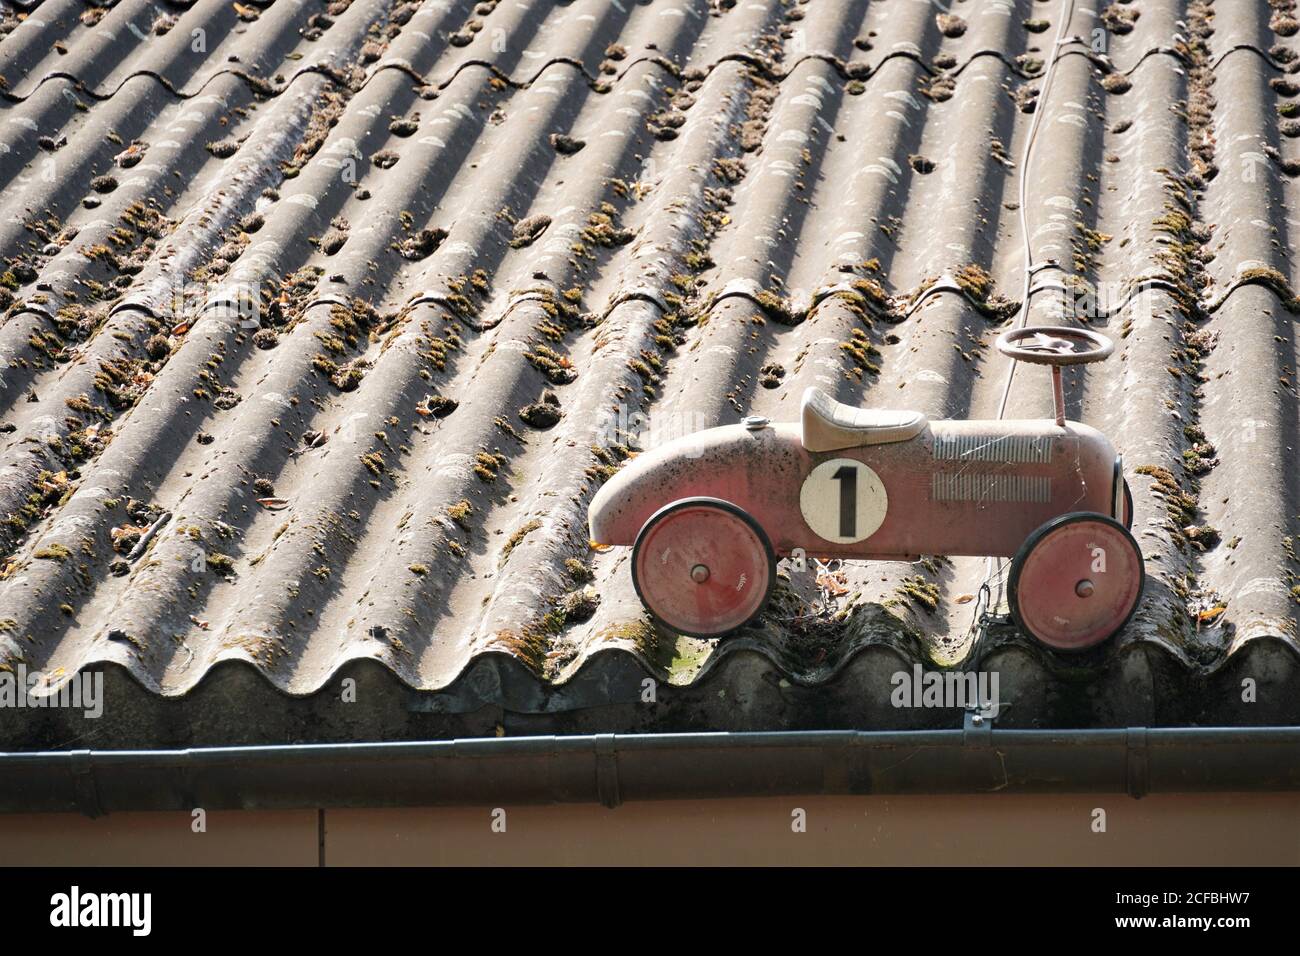 Ein rotes Schaukelauto, das auf einem alten grauen Korrugat-Faserzementdach mit Moos aufgestellt wurde. Das Auto ist altmodisch und hat die Nummer 1 bemalt. Stockfoto